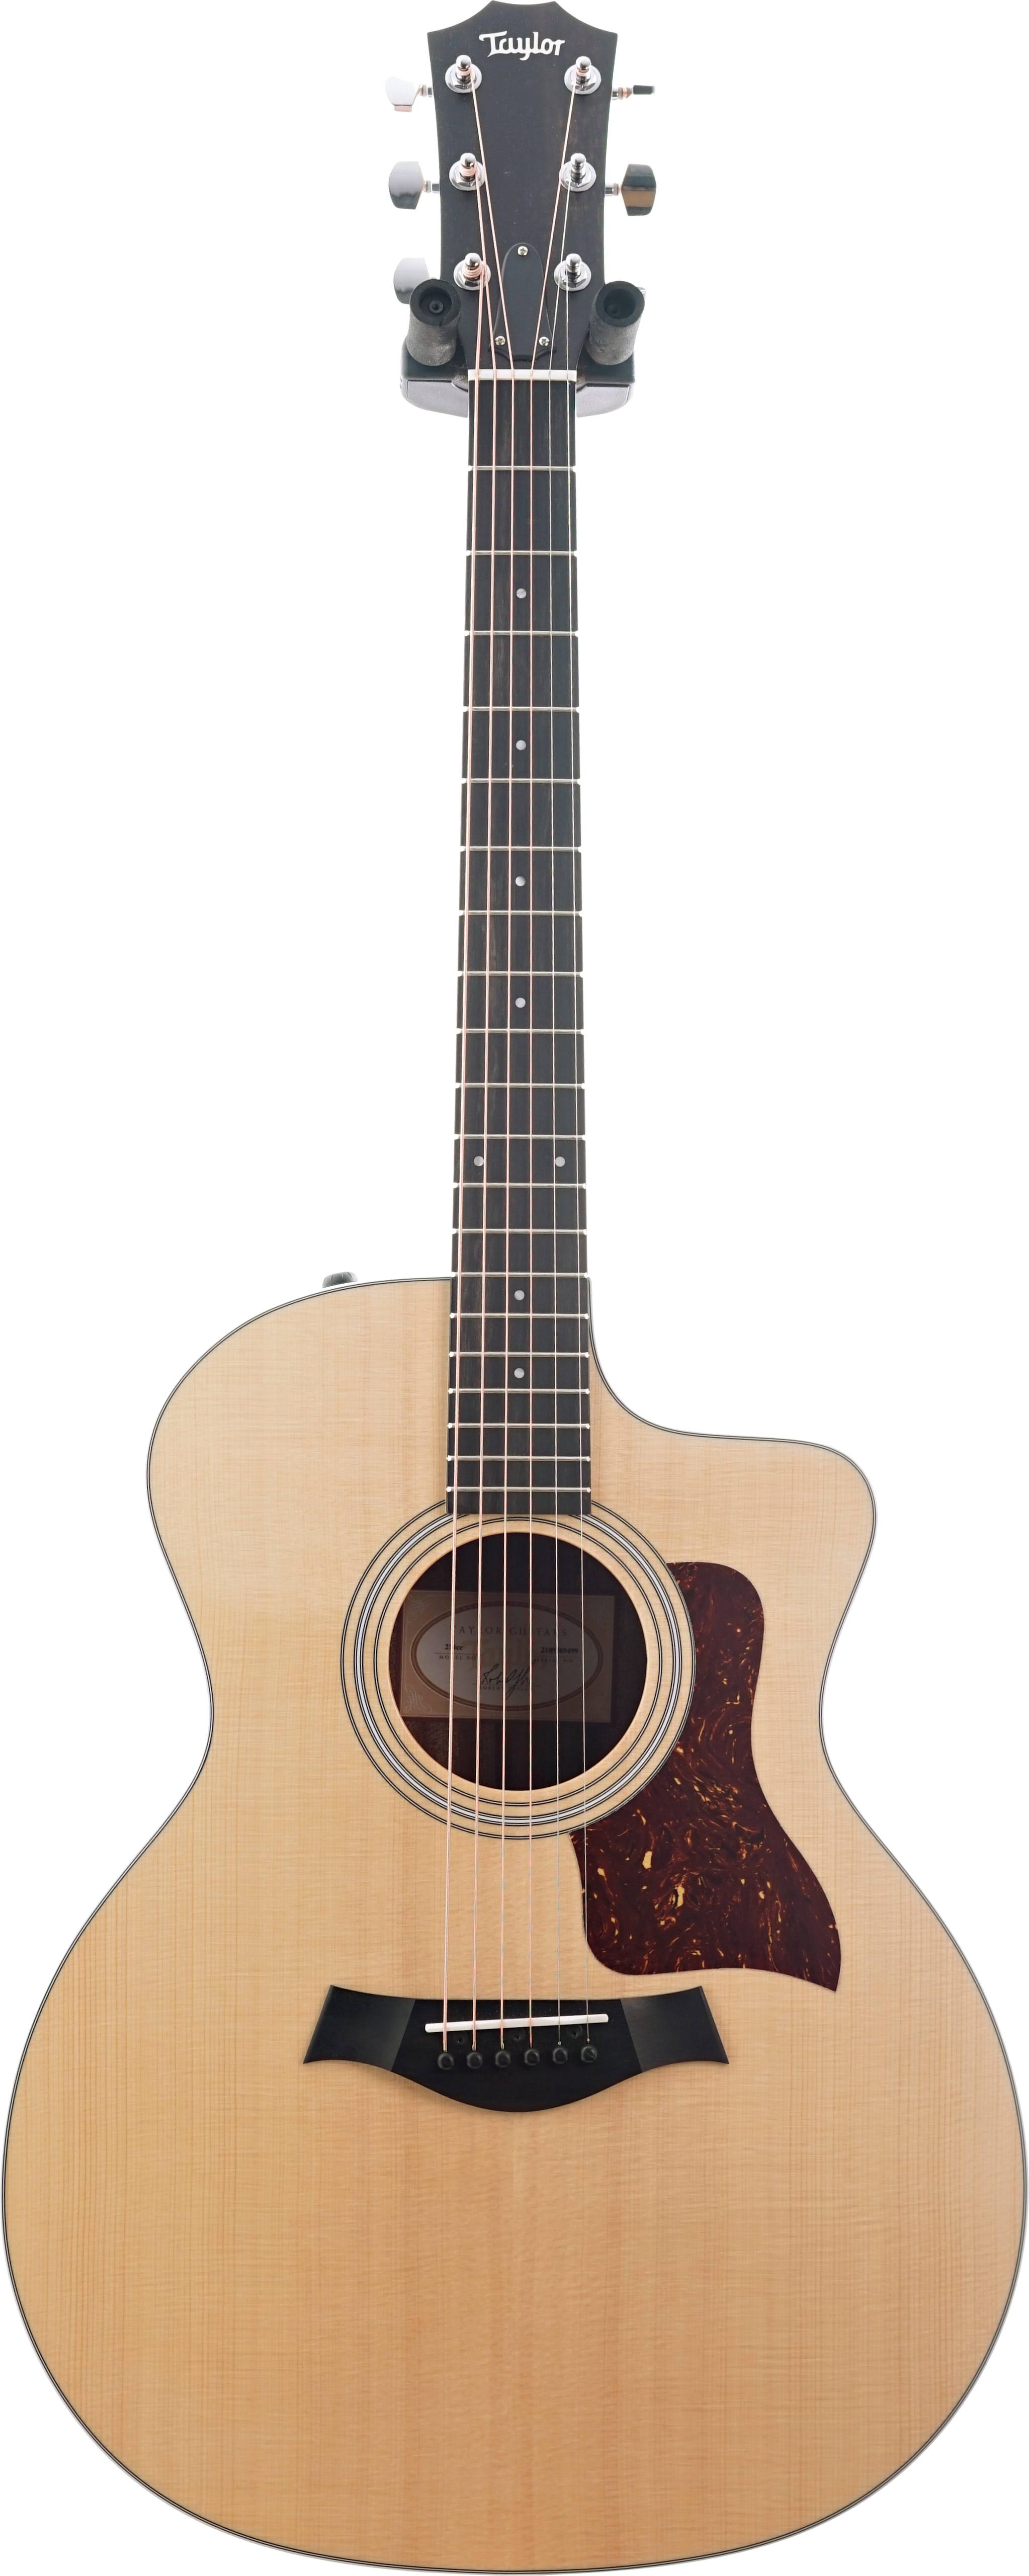 Taylor 214ce - Acoustic Guitar